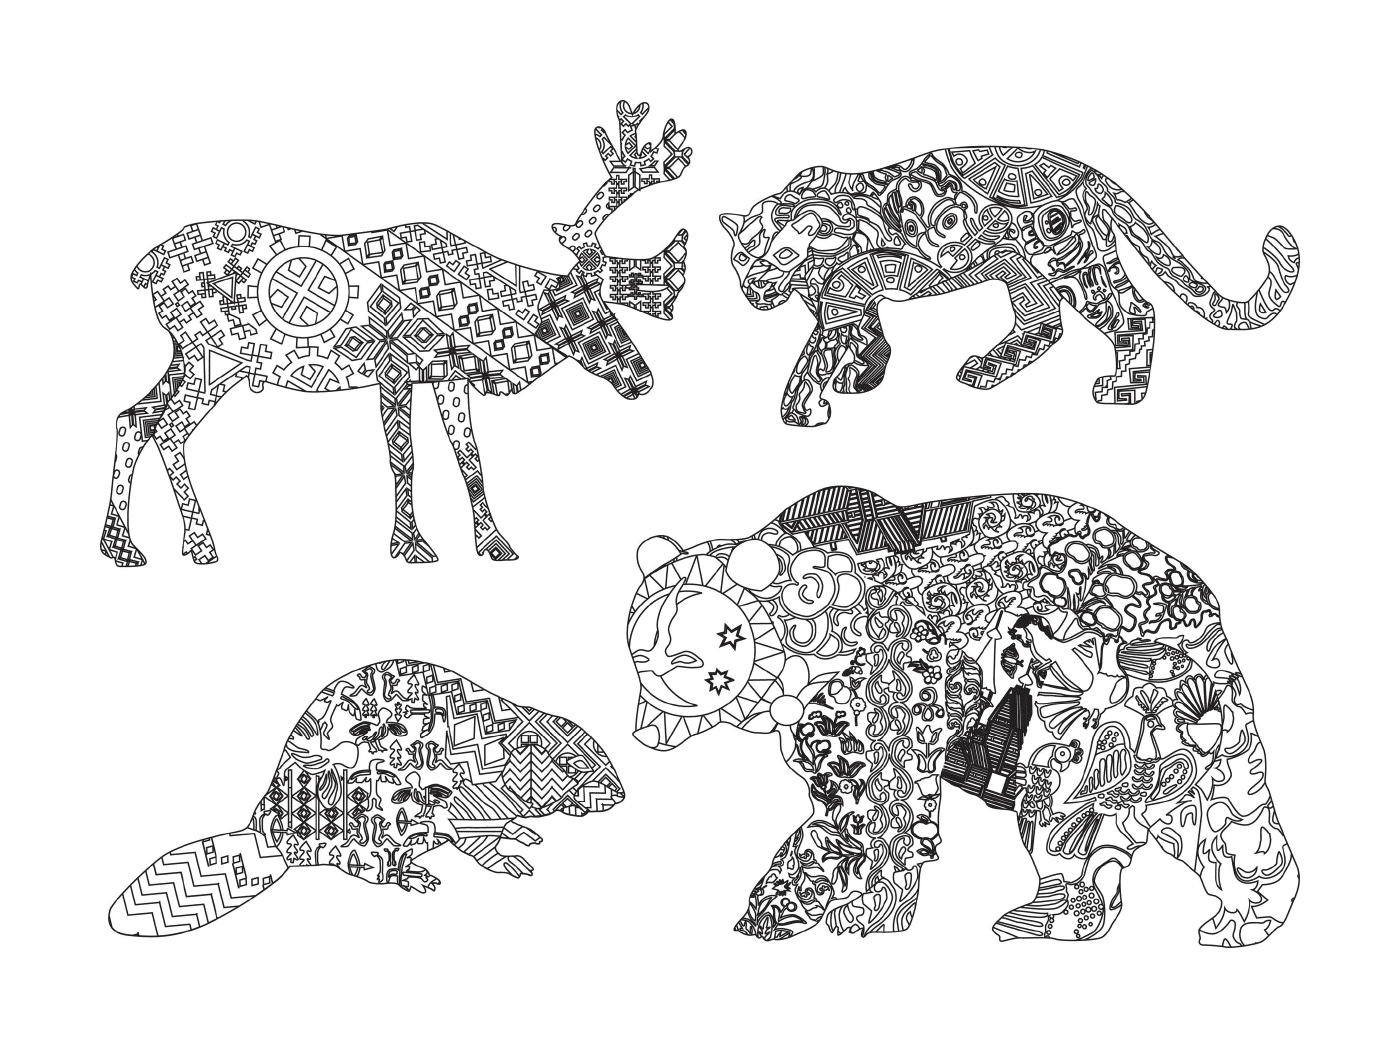  Grupo de animais desenhados com motivos 